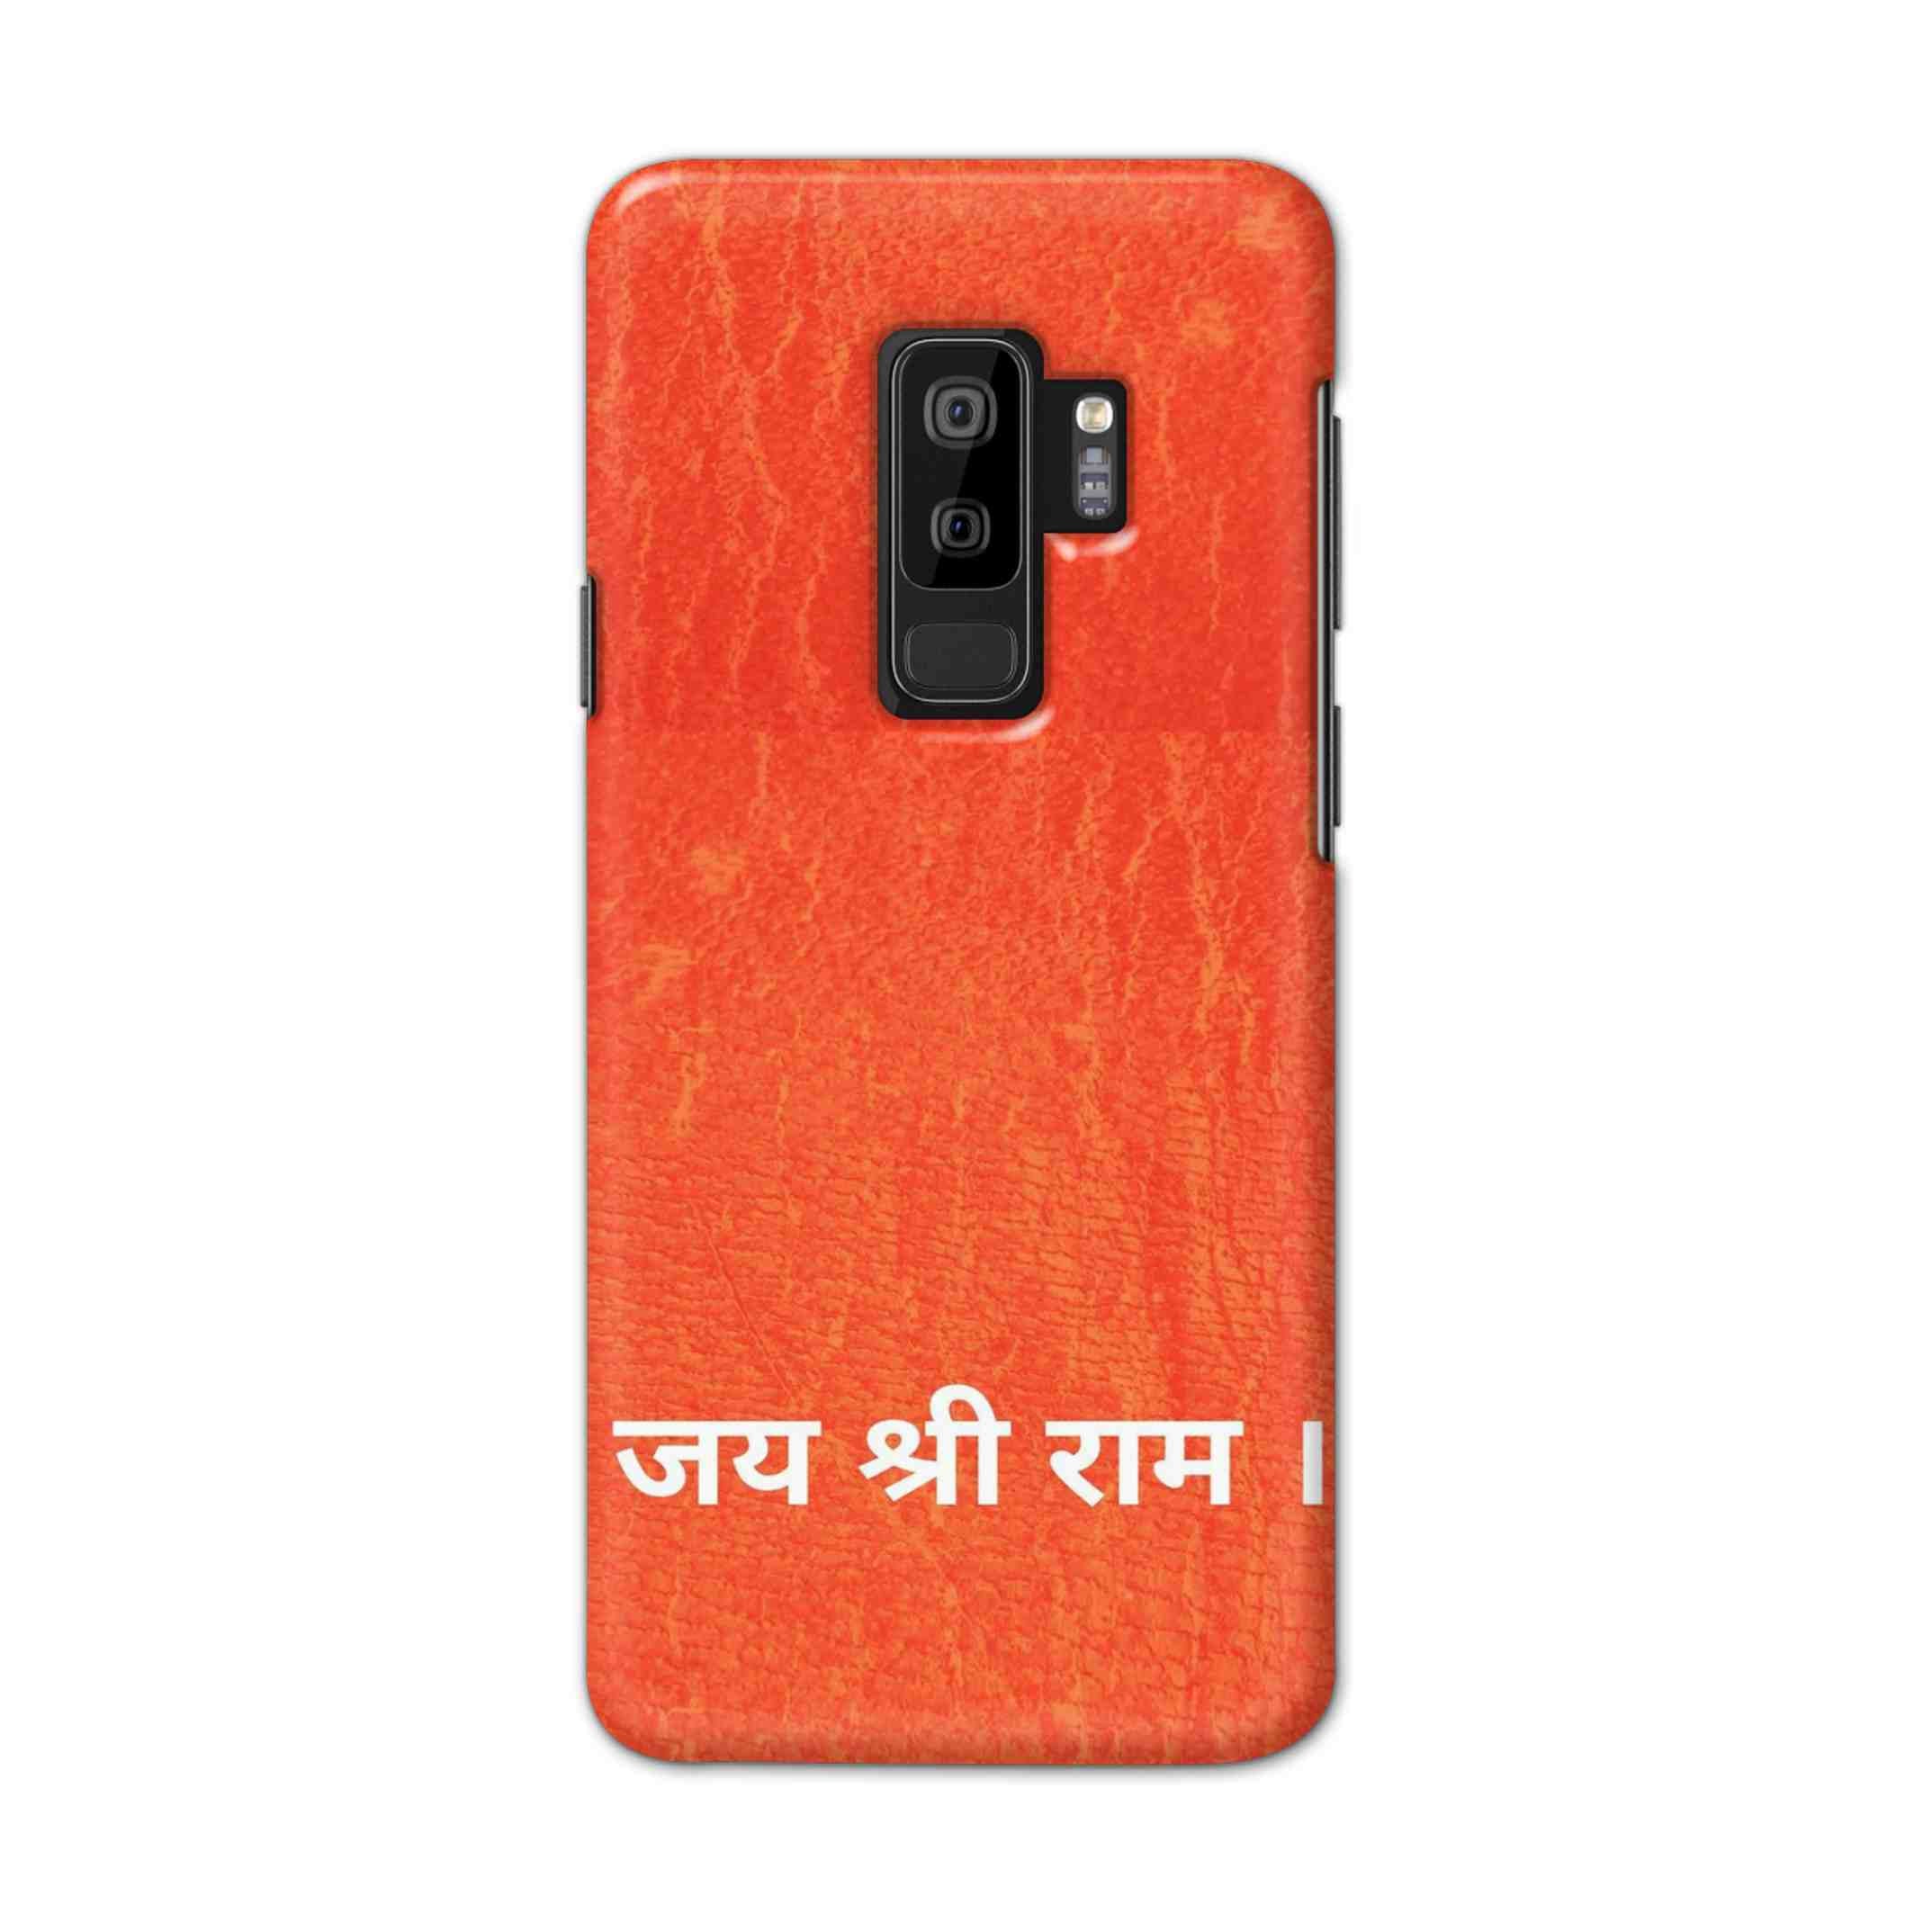 Buy Jai Shree Ram Hard Back Mobile Phone Case Cover For Samsung S9 plus Online